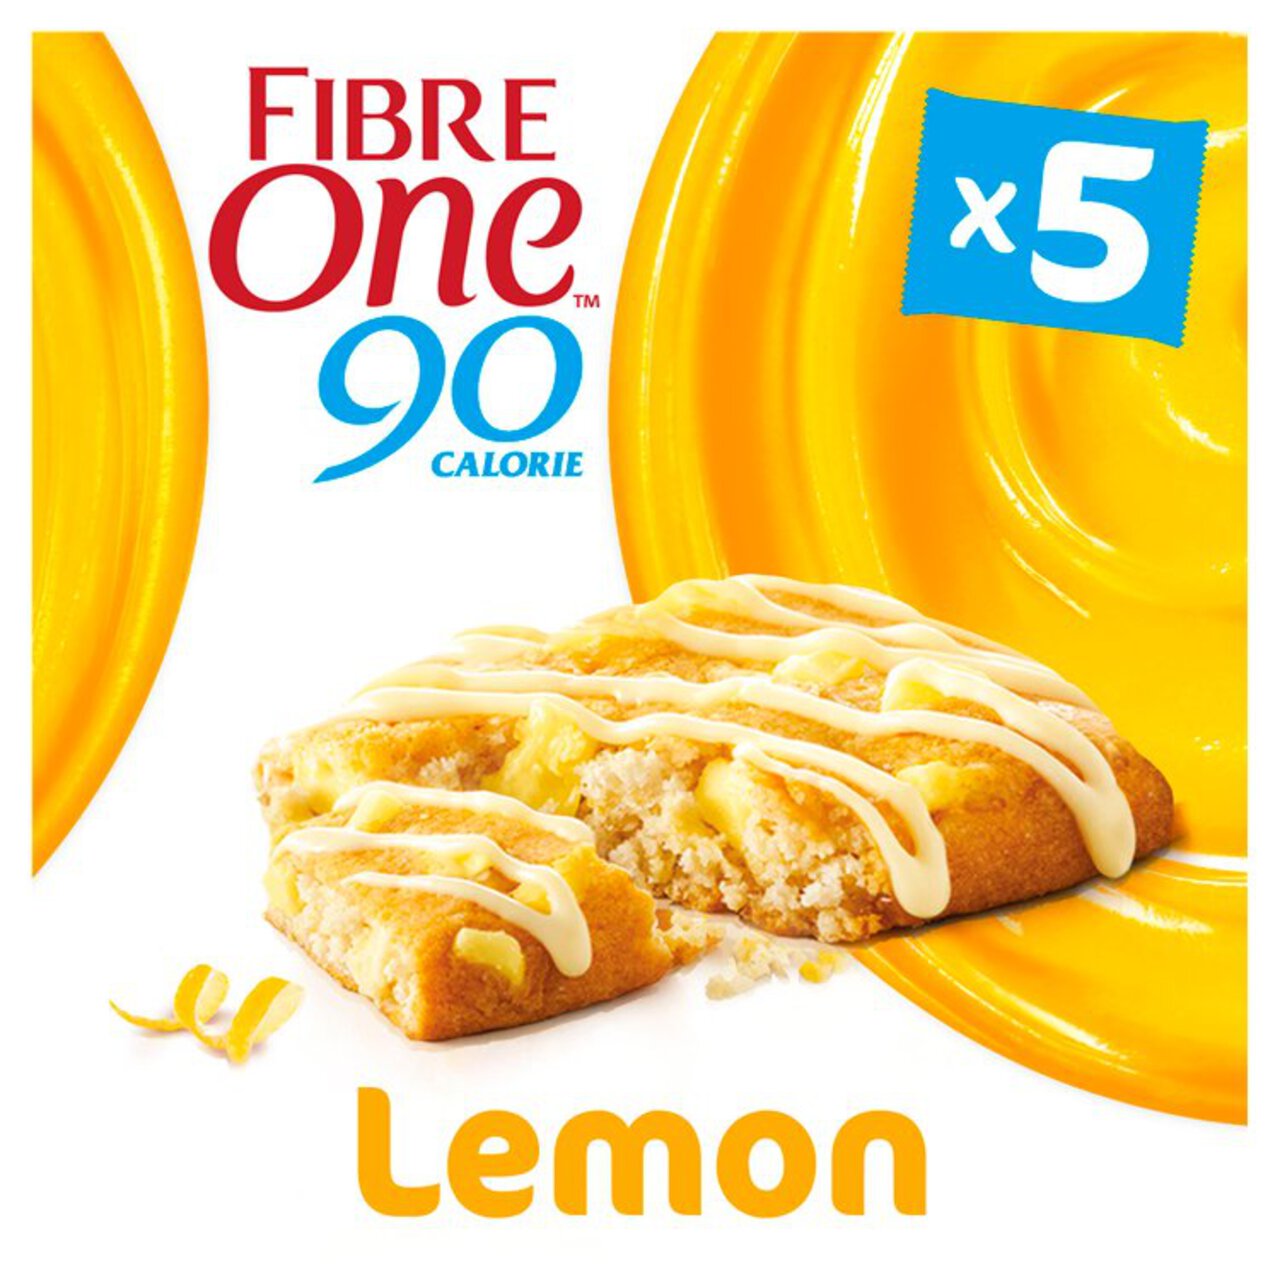 Fibre One 90 Calorie Lemon Drizzle Bars 5 x 24g